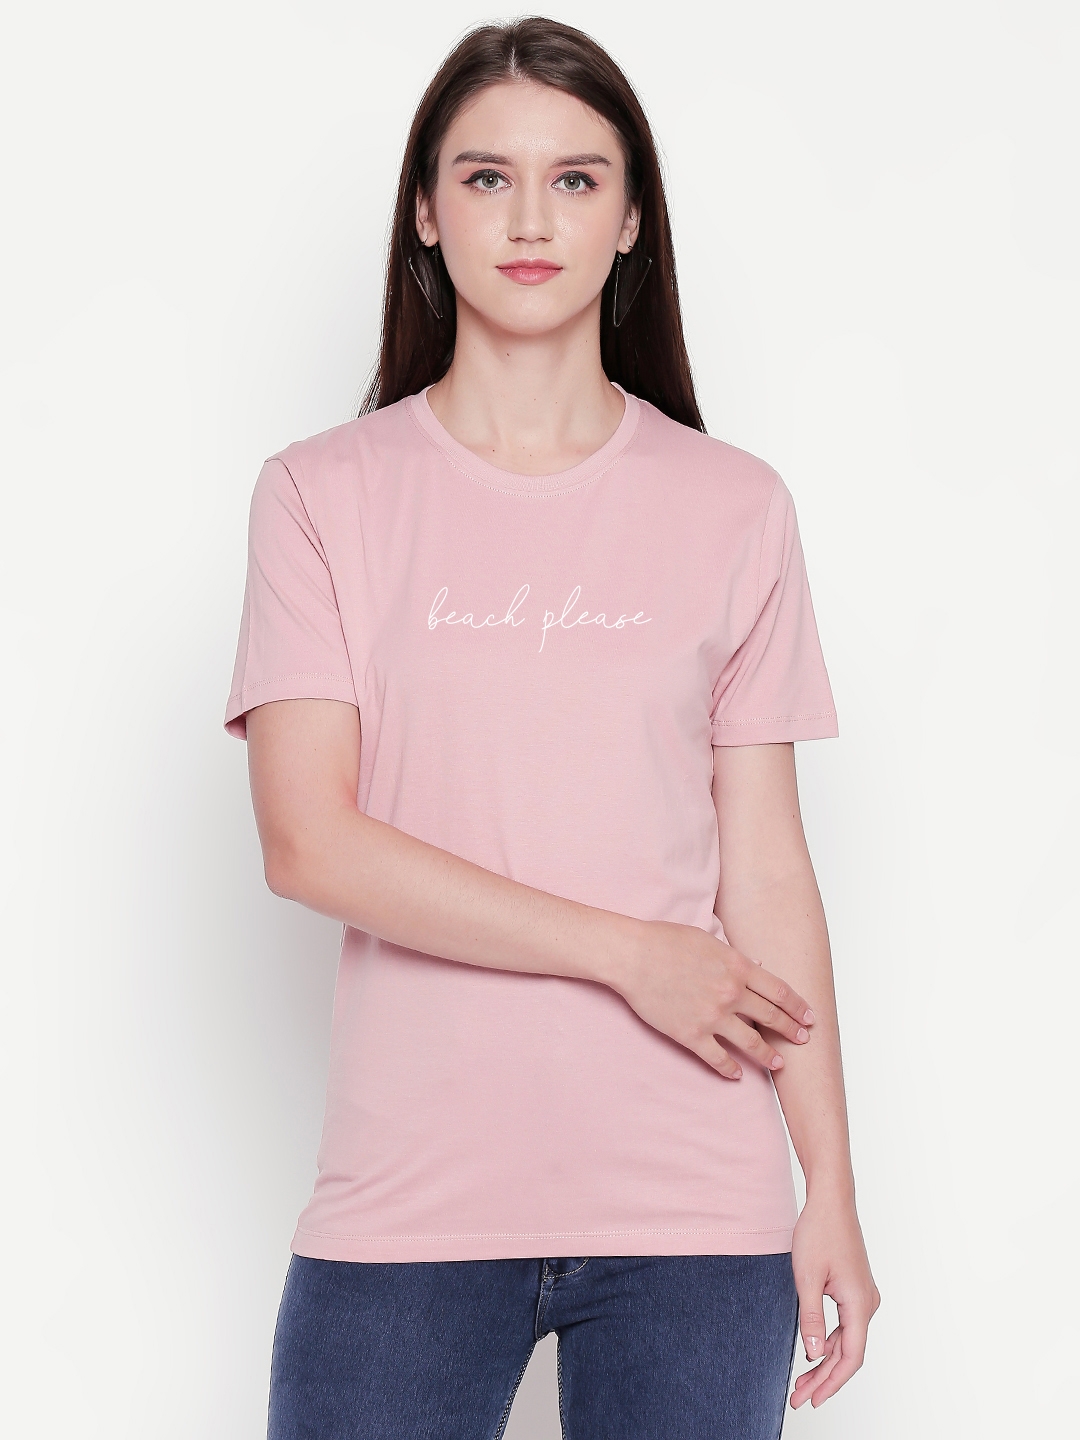 creativeideas.store | Beach Please Pink Tshirt